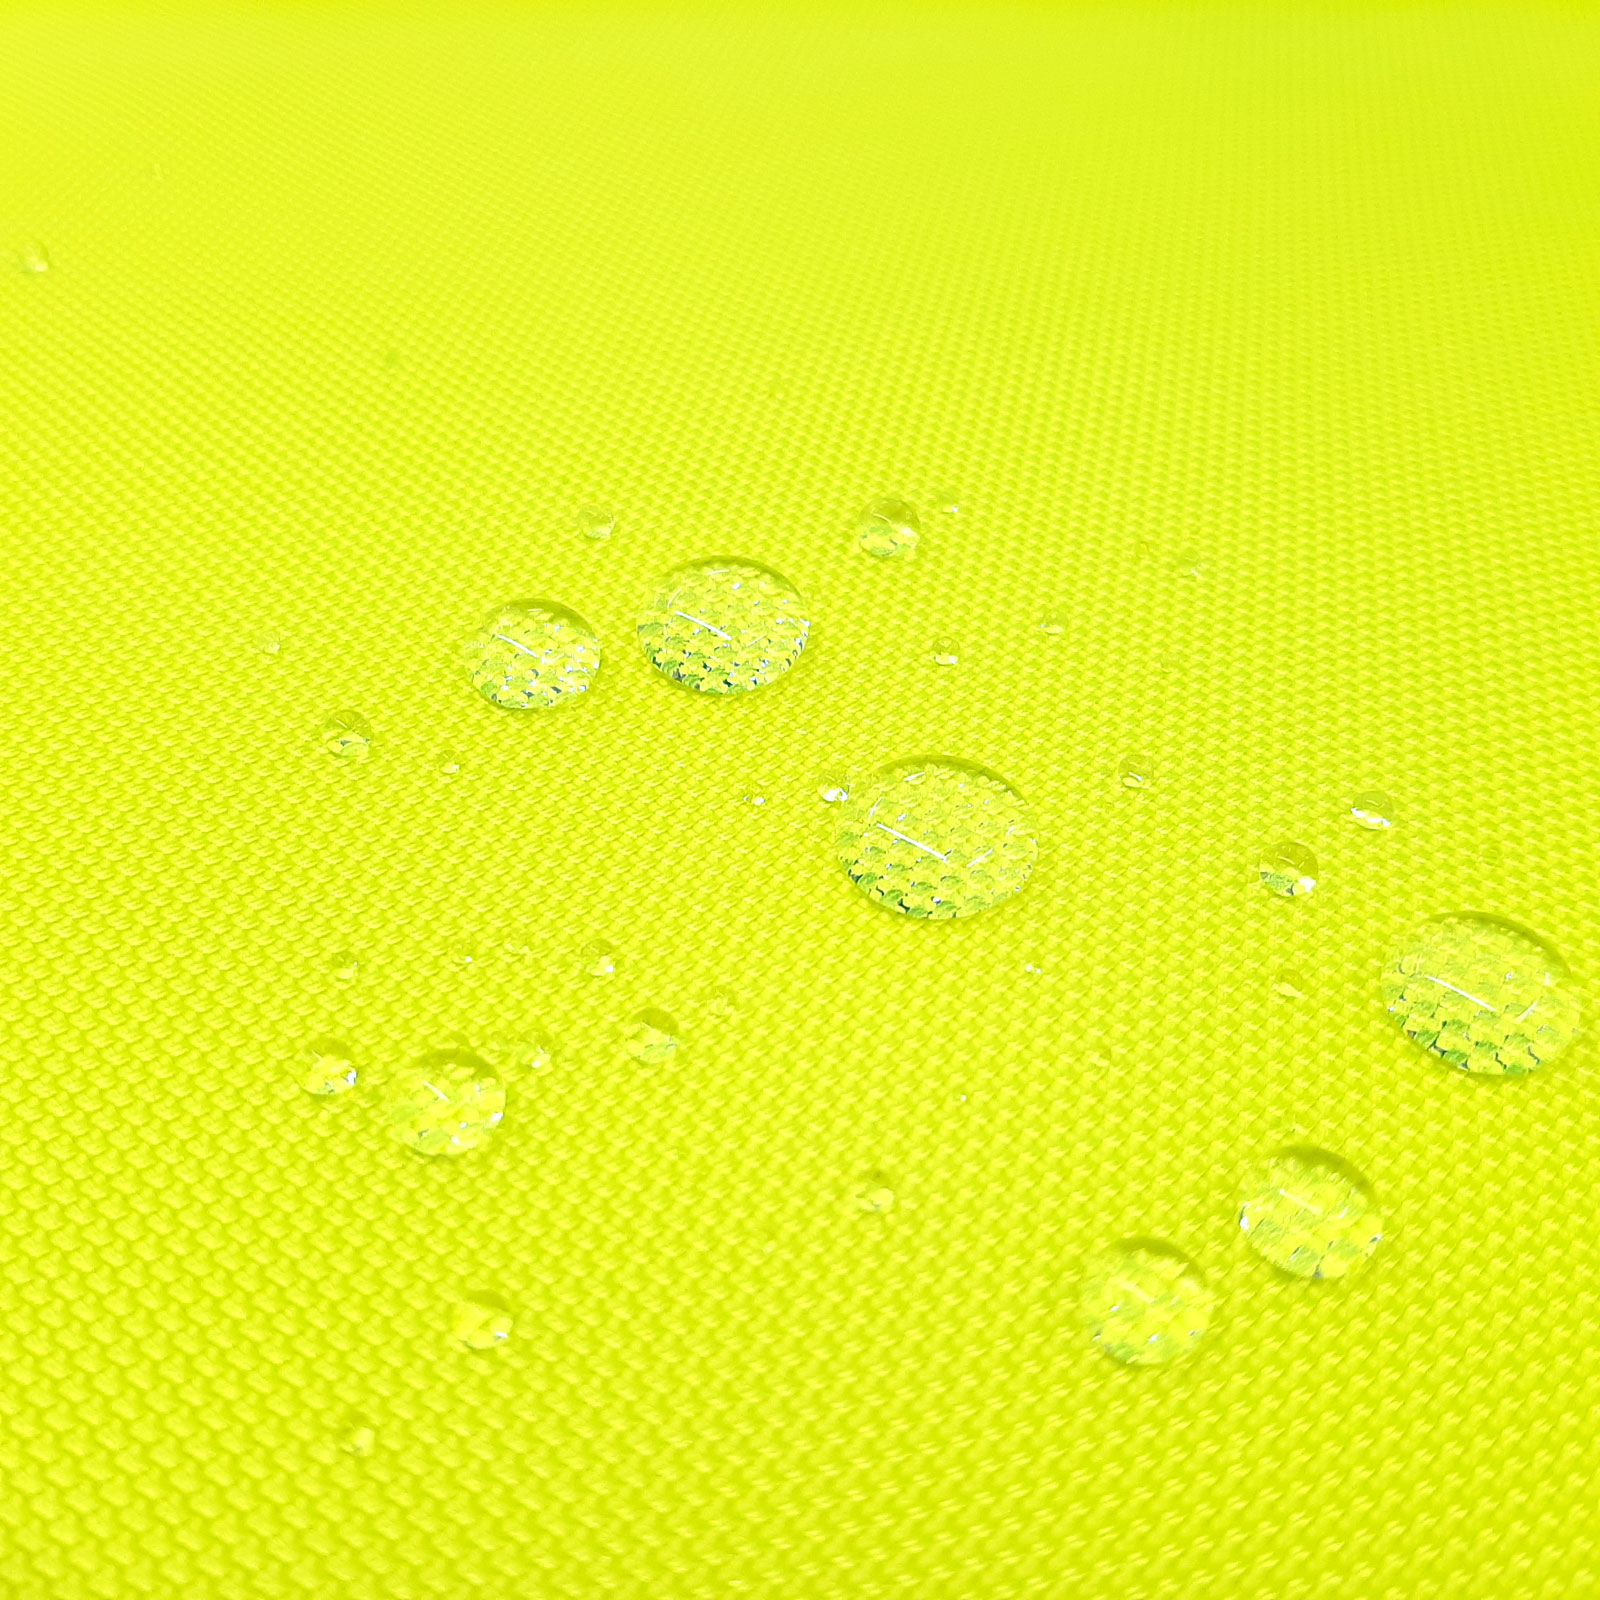 Lamia - Keprotec® 3-layer laminate - neon yellow according to EN20471